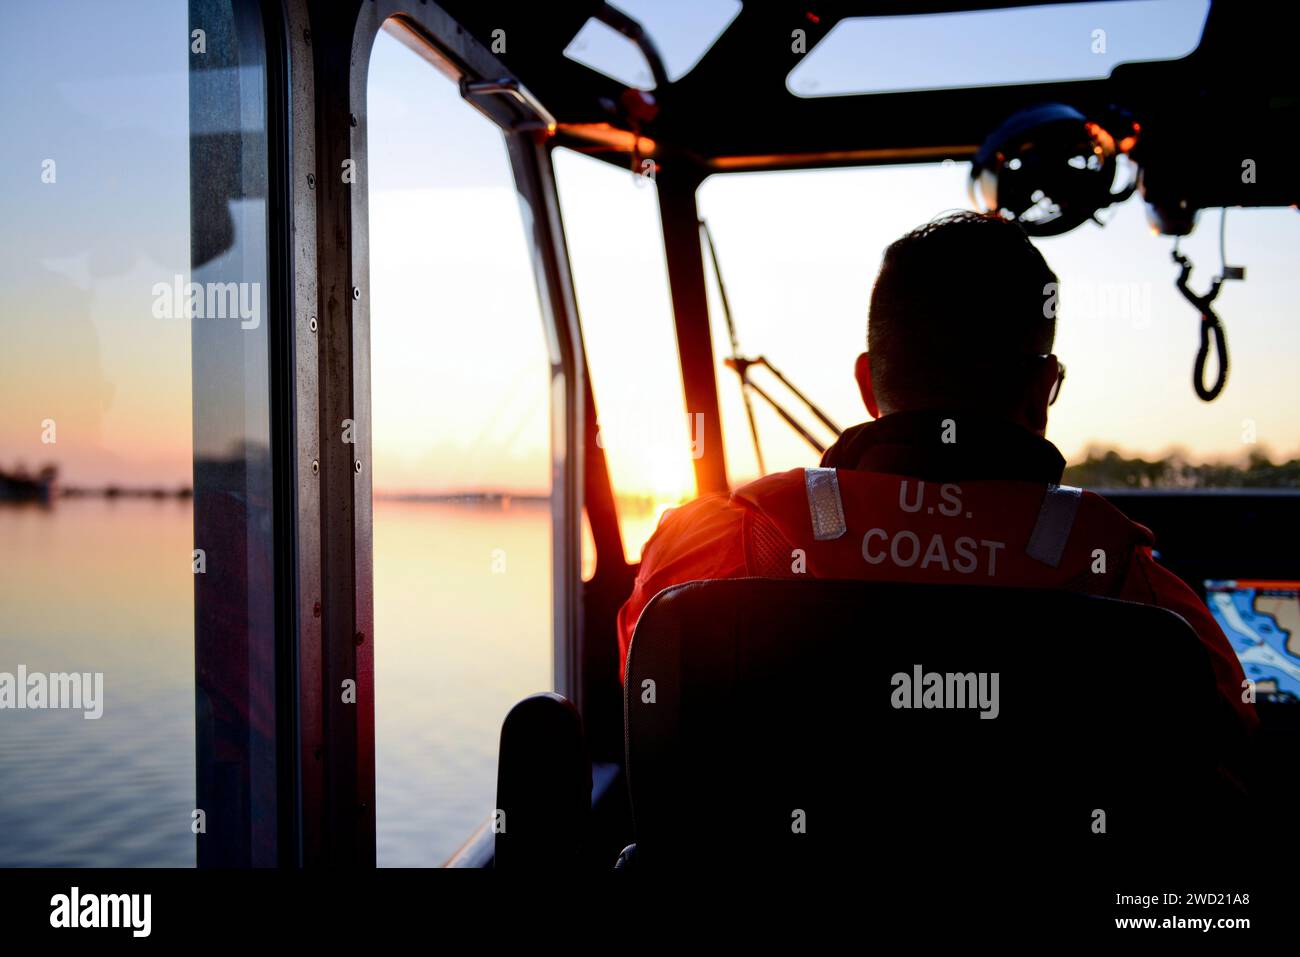 La Guardia Costiera degli Stati Uniti naviga su Cherry Island mentre il sole tramonta, Oxford, Maryland. Foto Stock